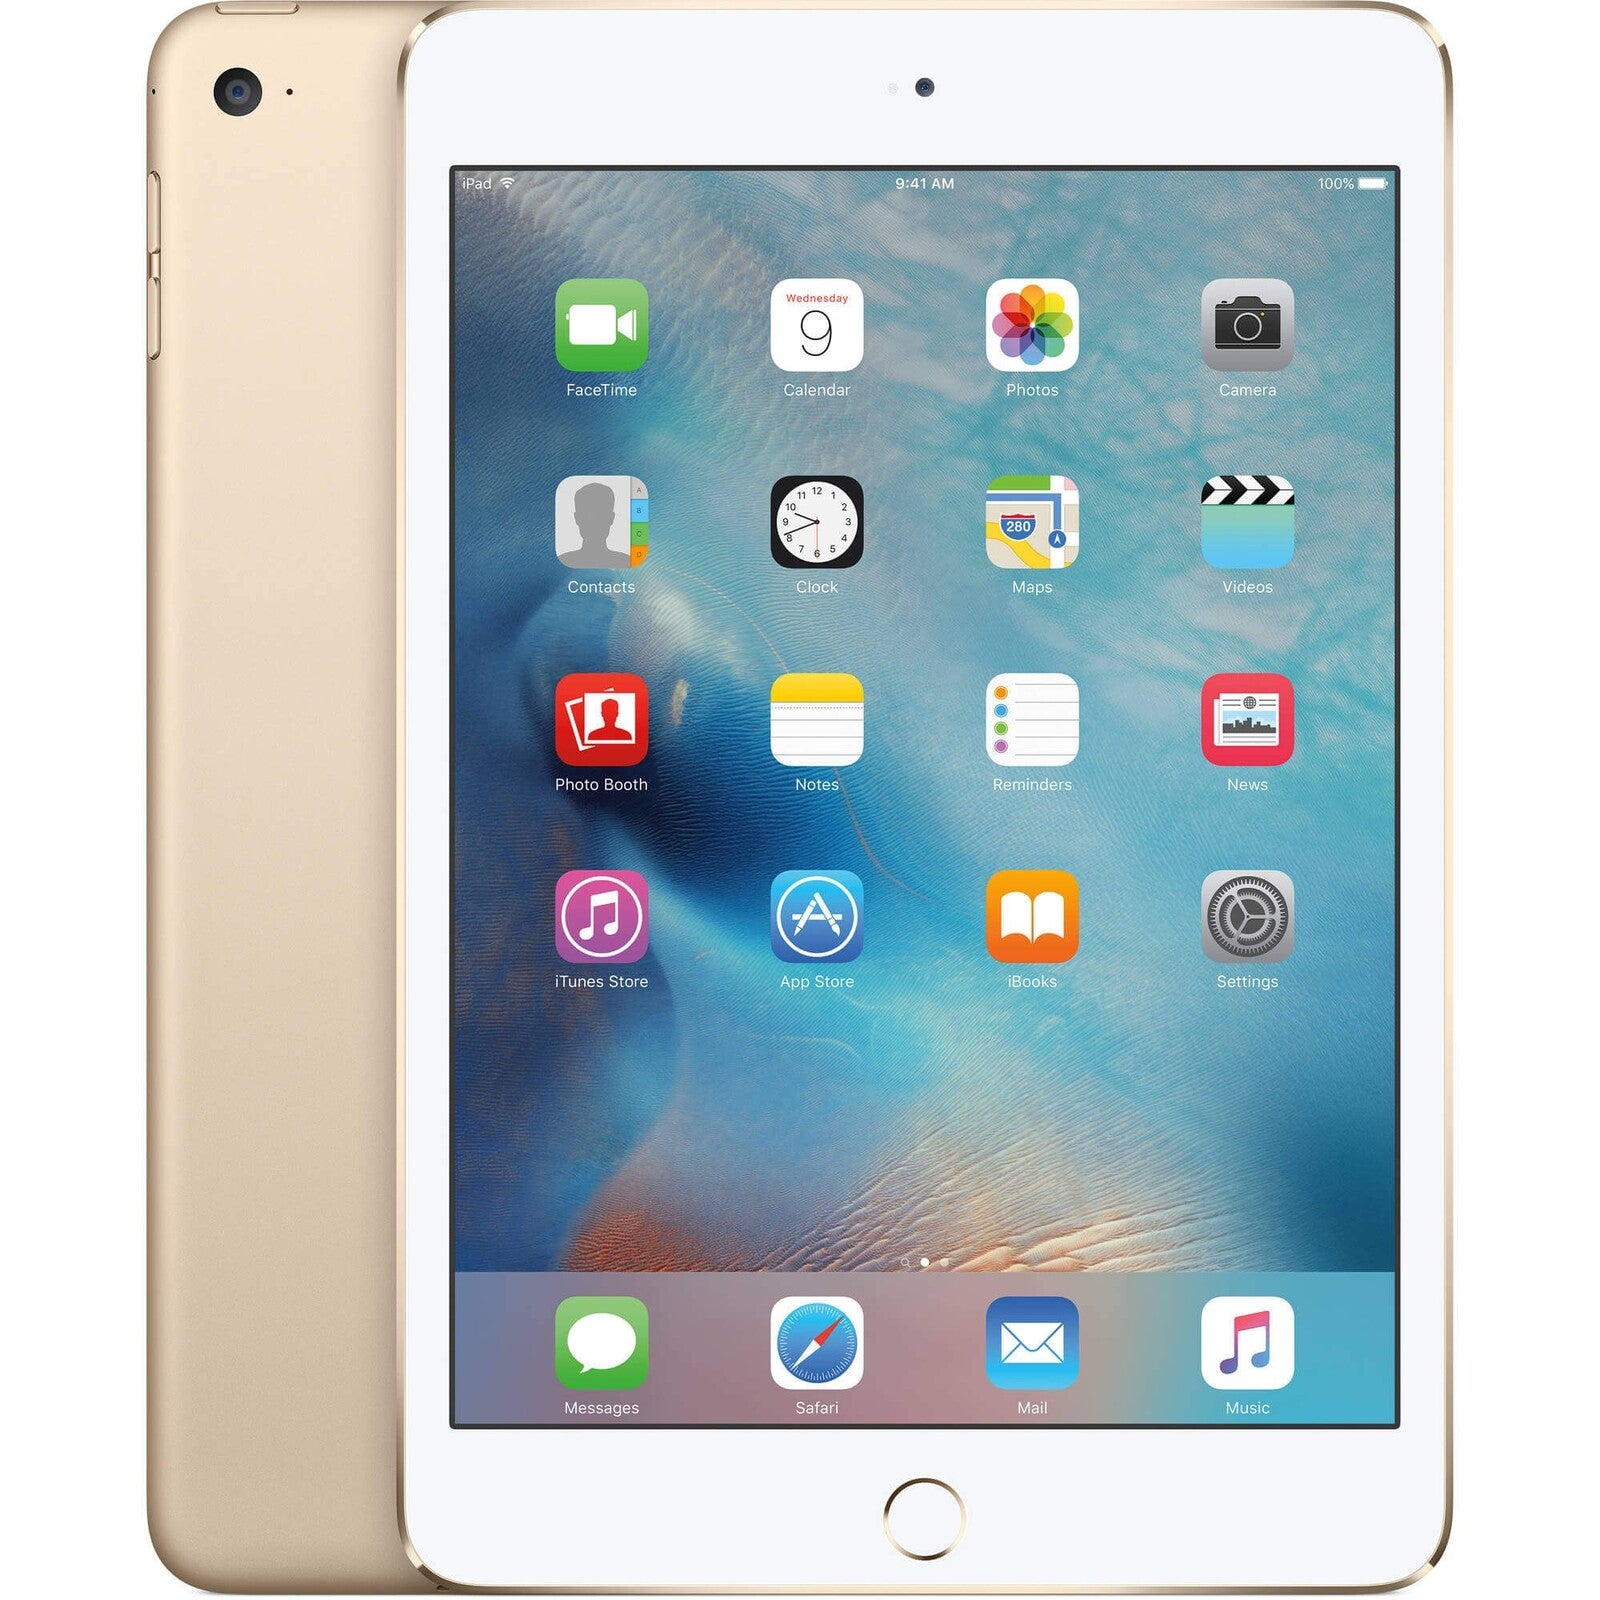 Apple iPad Mini 4 128GB Wifi - Gold - (As New Refurbished) - Grade B